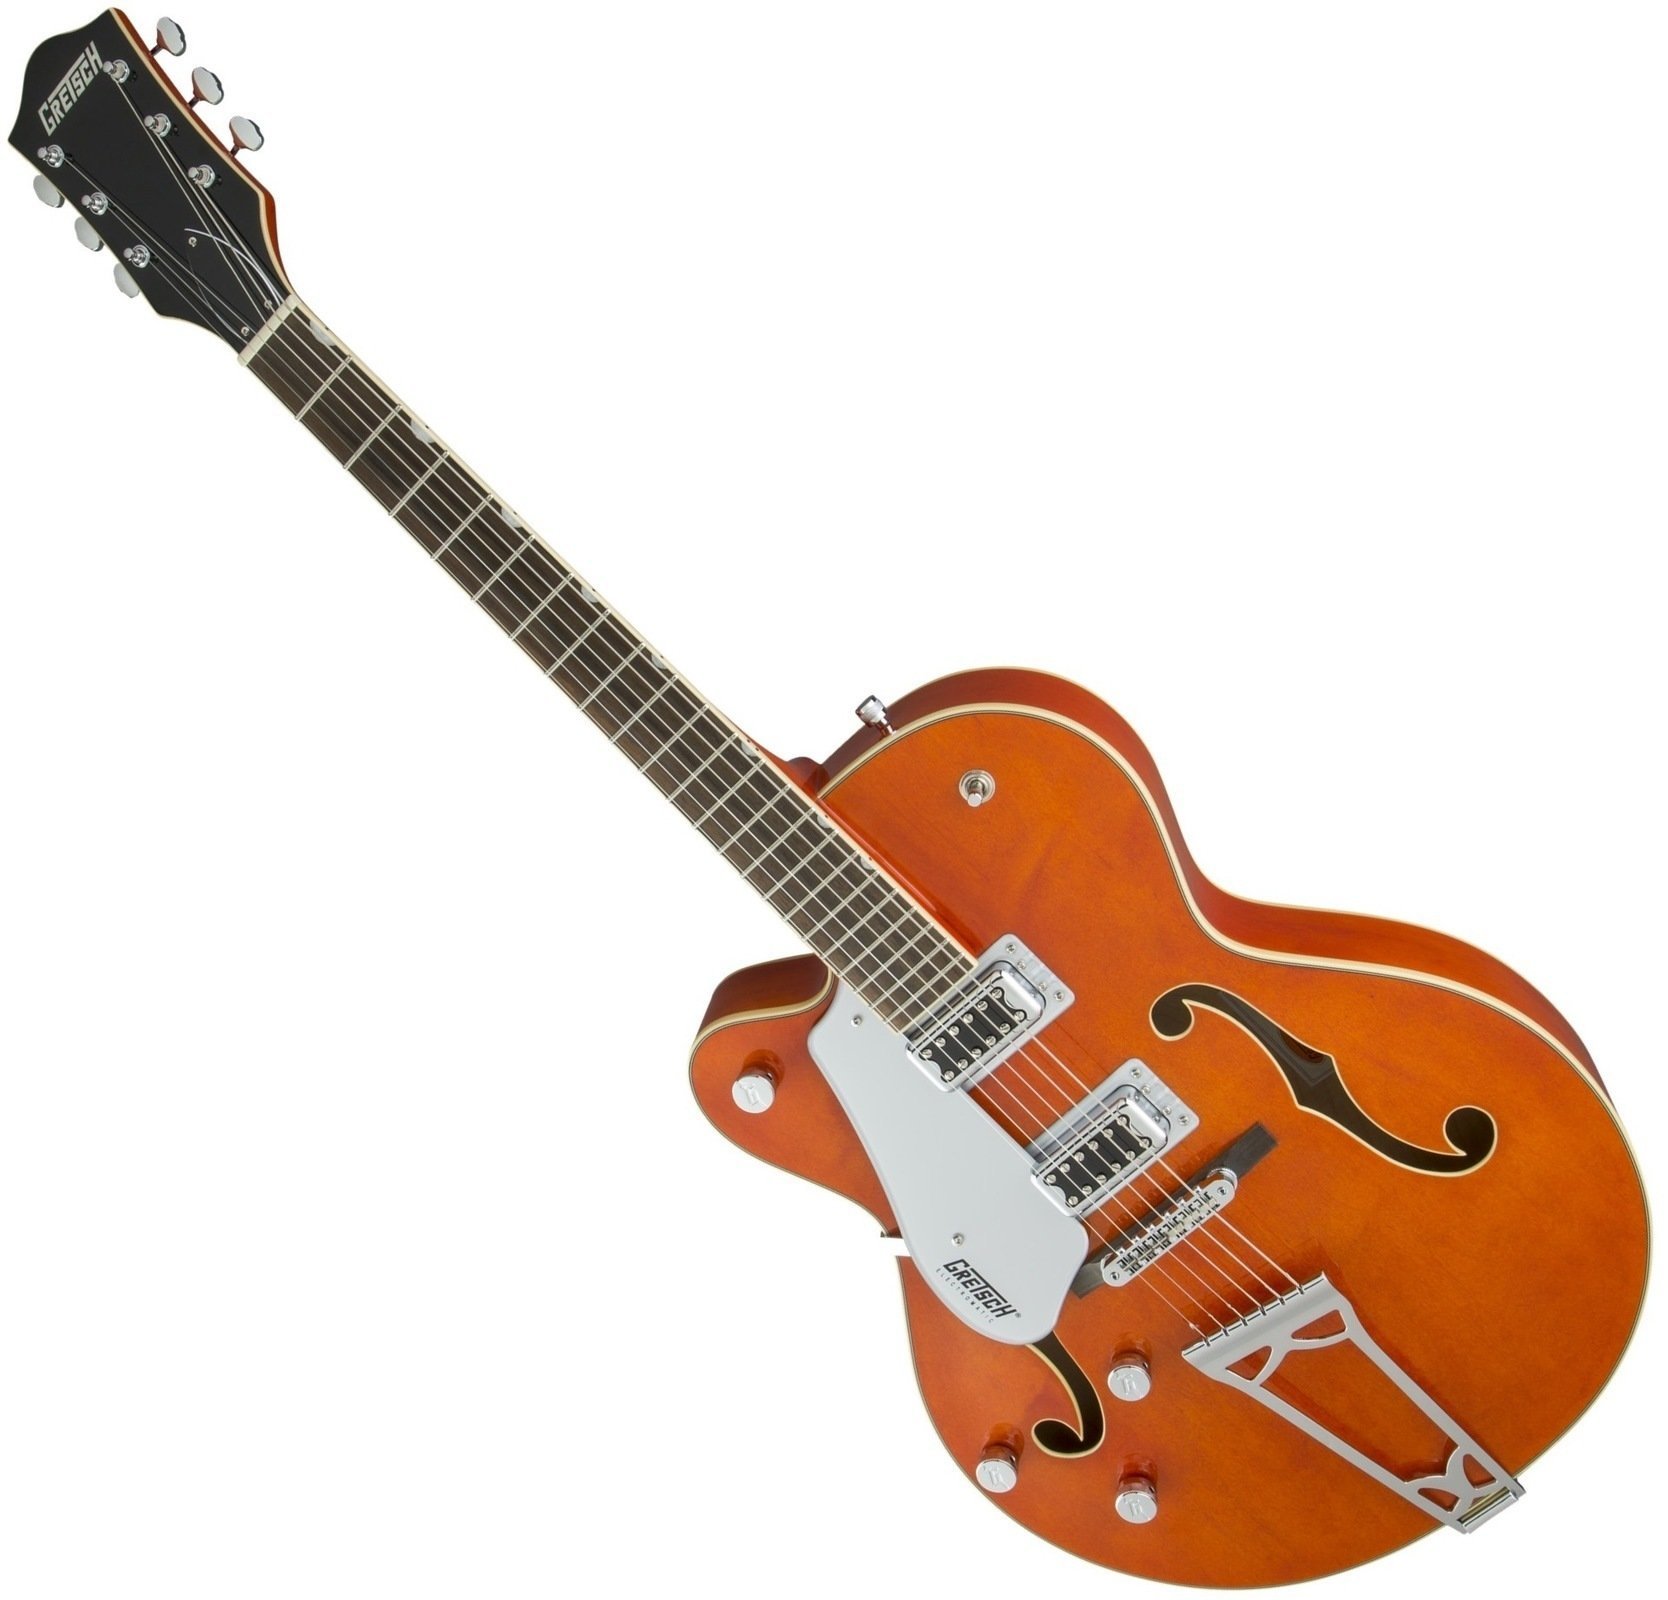 Halvakustisk guitar Gretsch G5420LH Electromatic SC RW Orange Stain